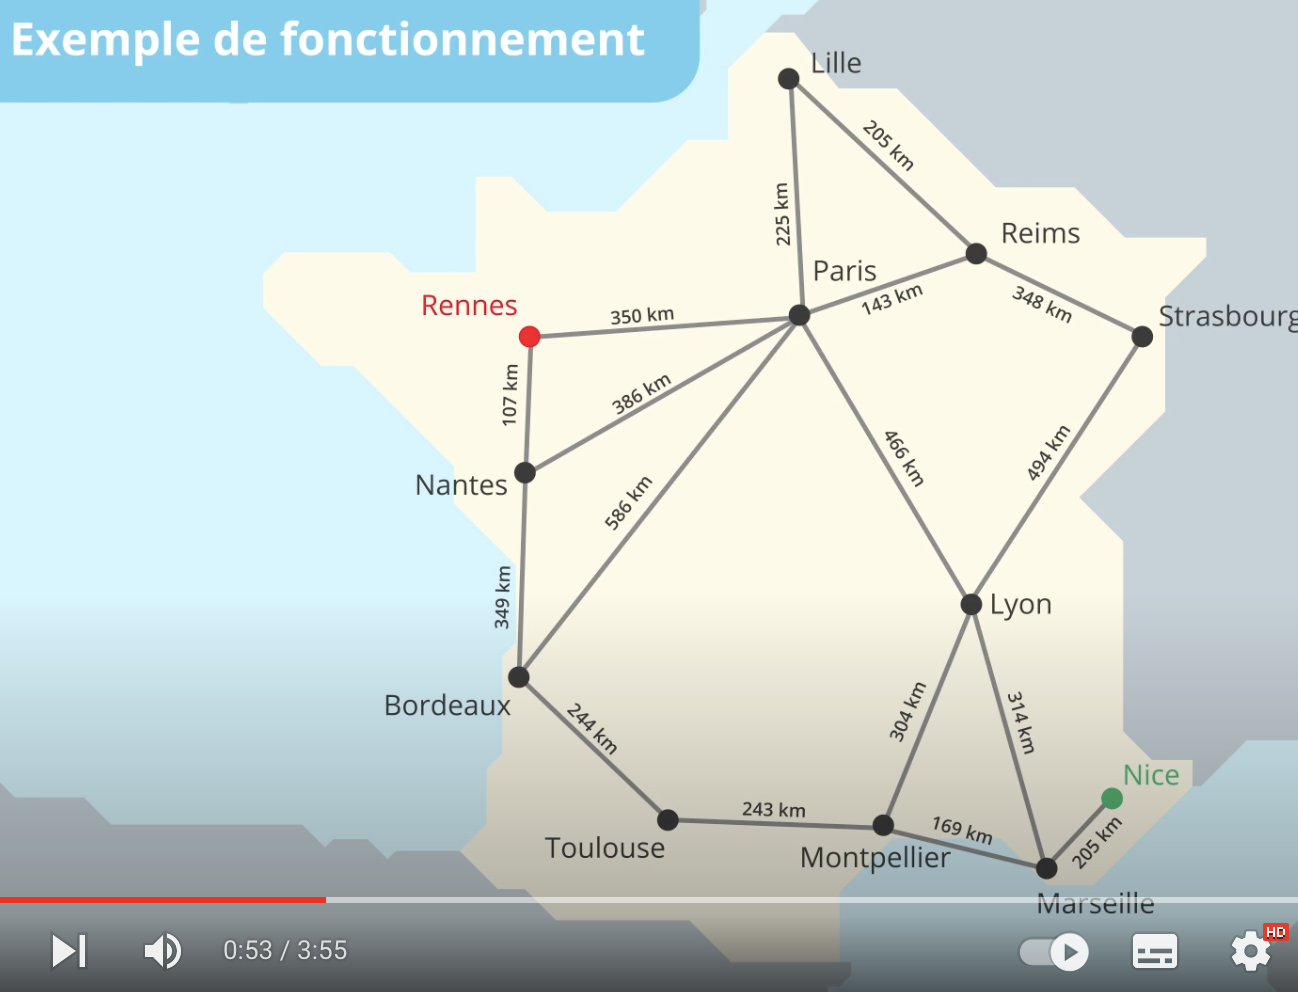 video - Lelivrescolaire.fr